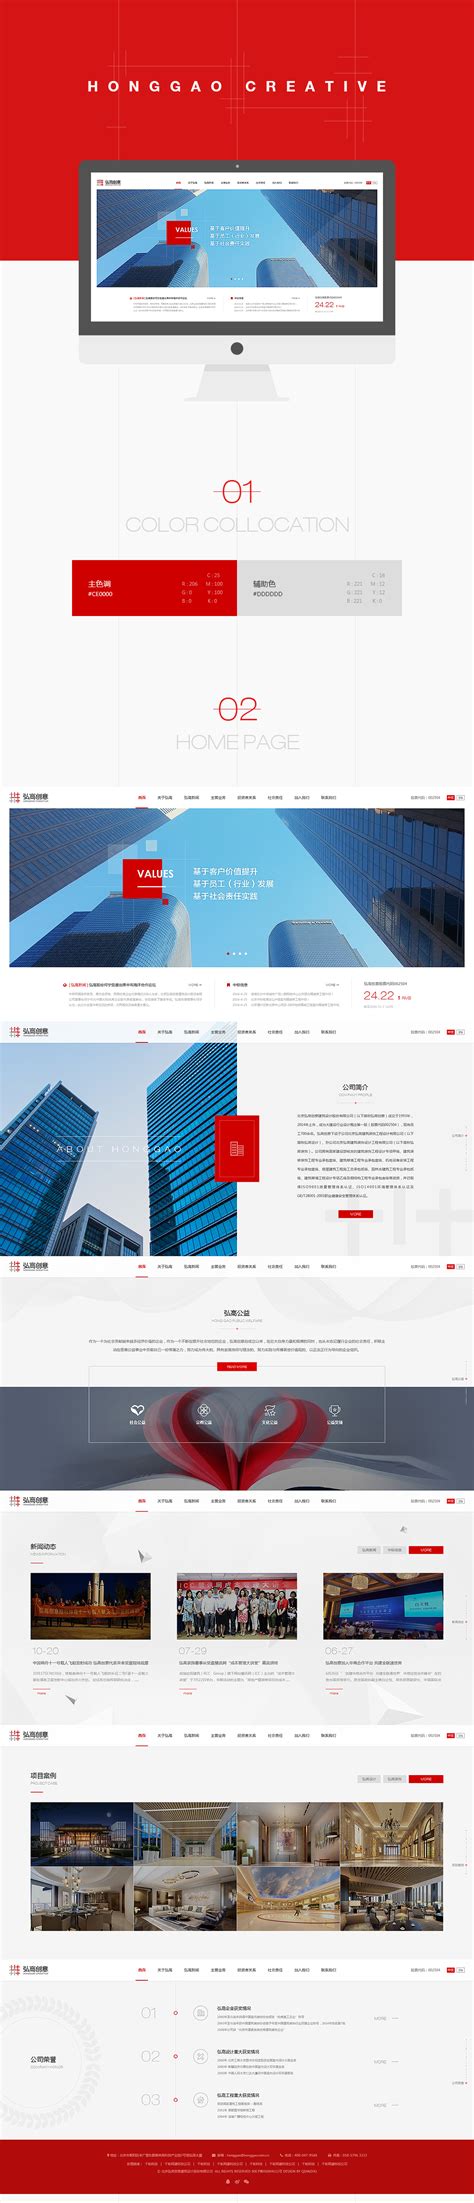 弘高创意集团响应式 - 北京网站建设|北京网站制作|北京网站设计|千助